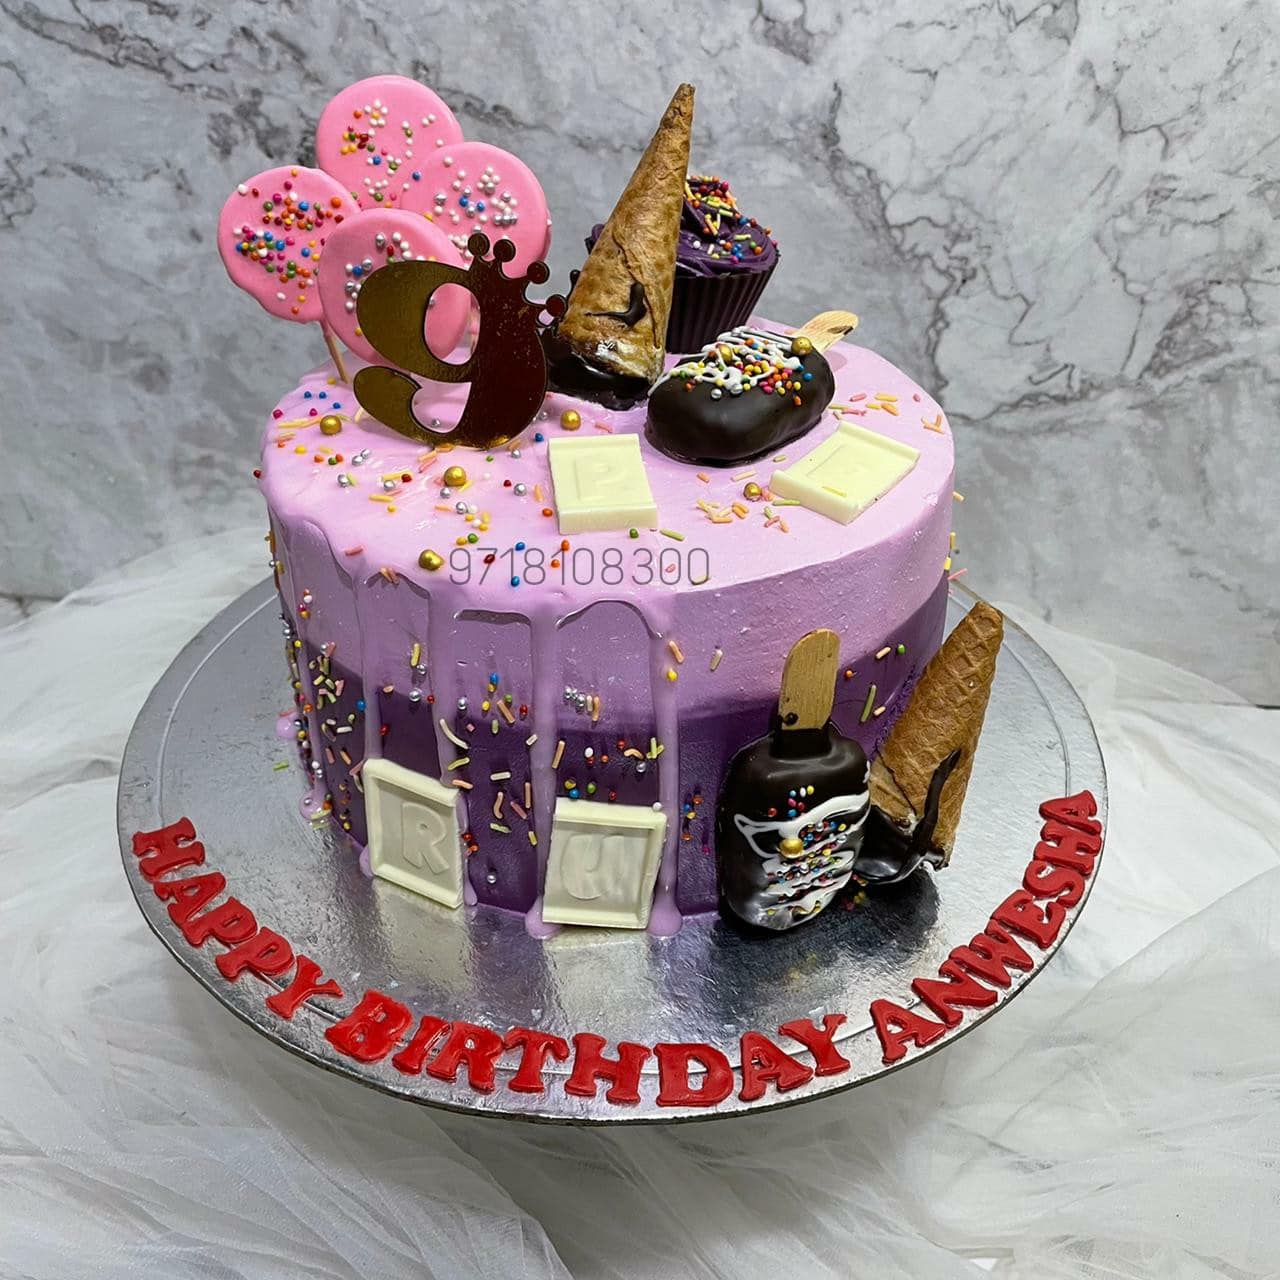 9th Birthday Cake | 18th Birthday Cake | 1st Birthday Cake | Yummy ...